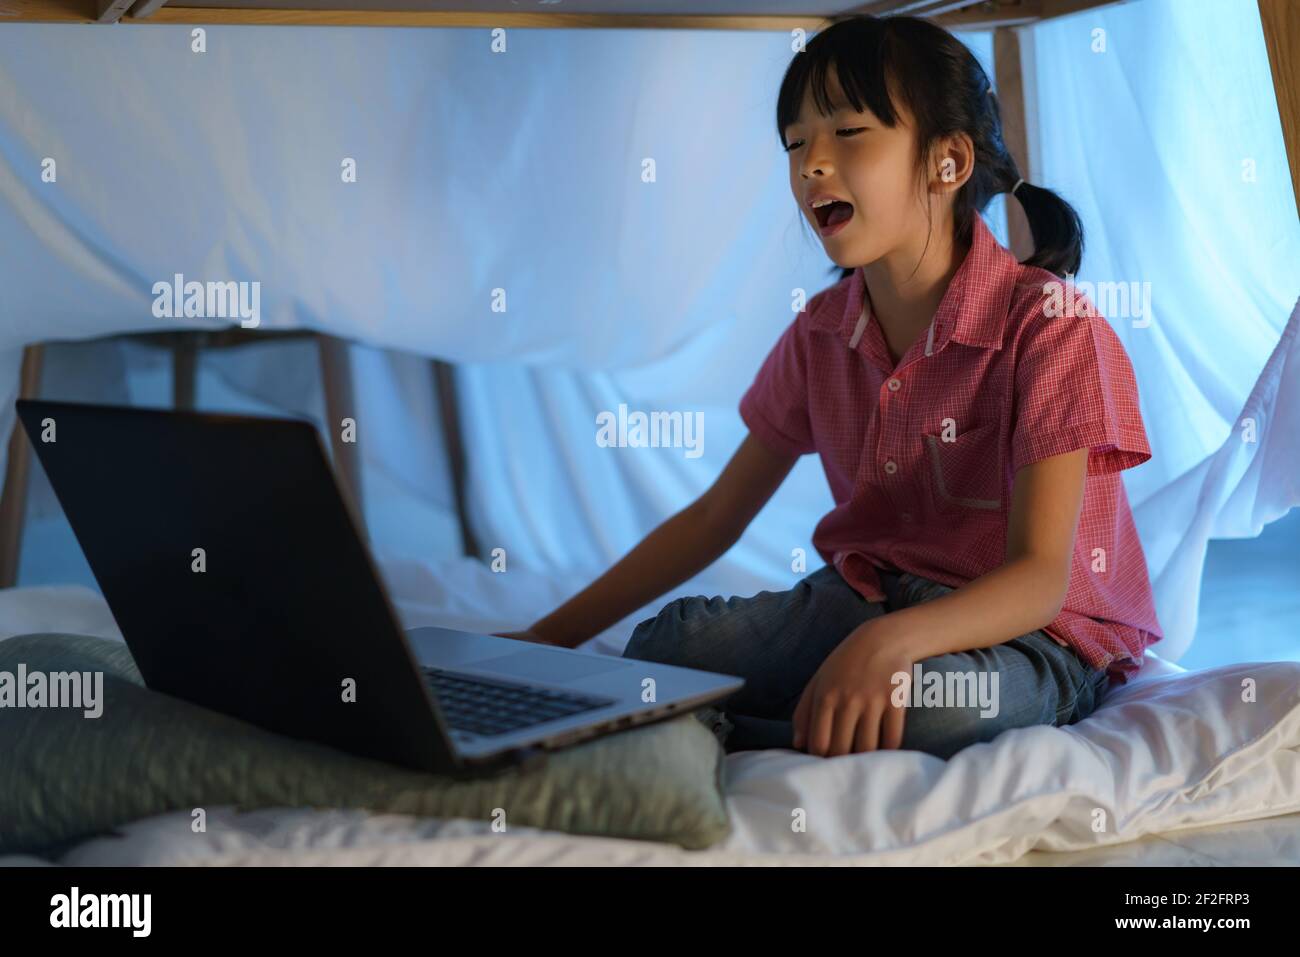 Une fille asiatique à faire un camp pour jouer de façon créative en regardant un film sur ordinateur portable dans l'obscurité du camp dans le salon à la maison. Banque D'Images